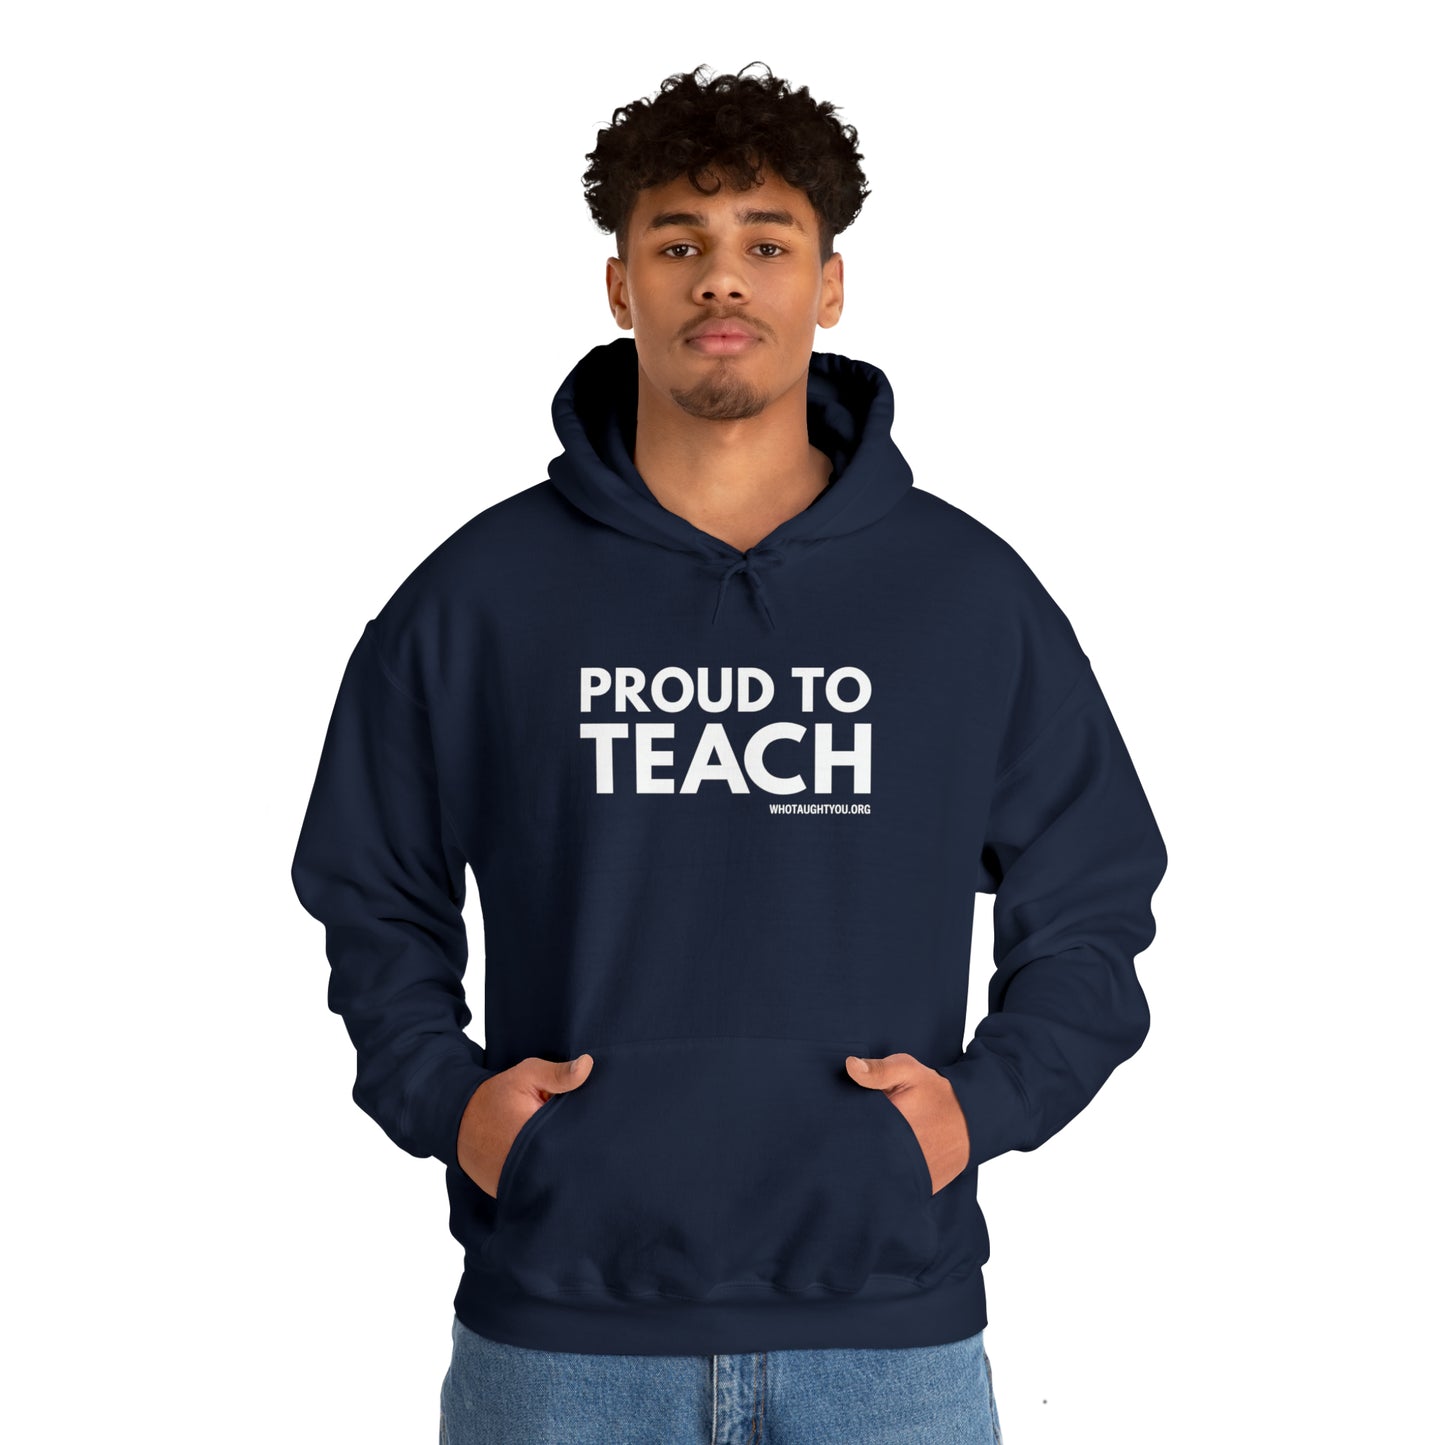 PROUD TO TEACH Hooded Sweatshirt